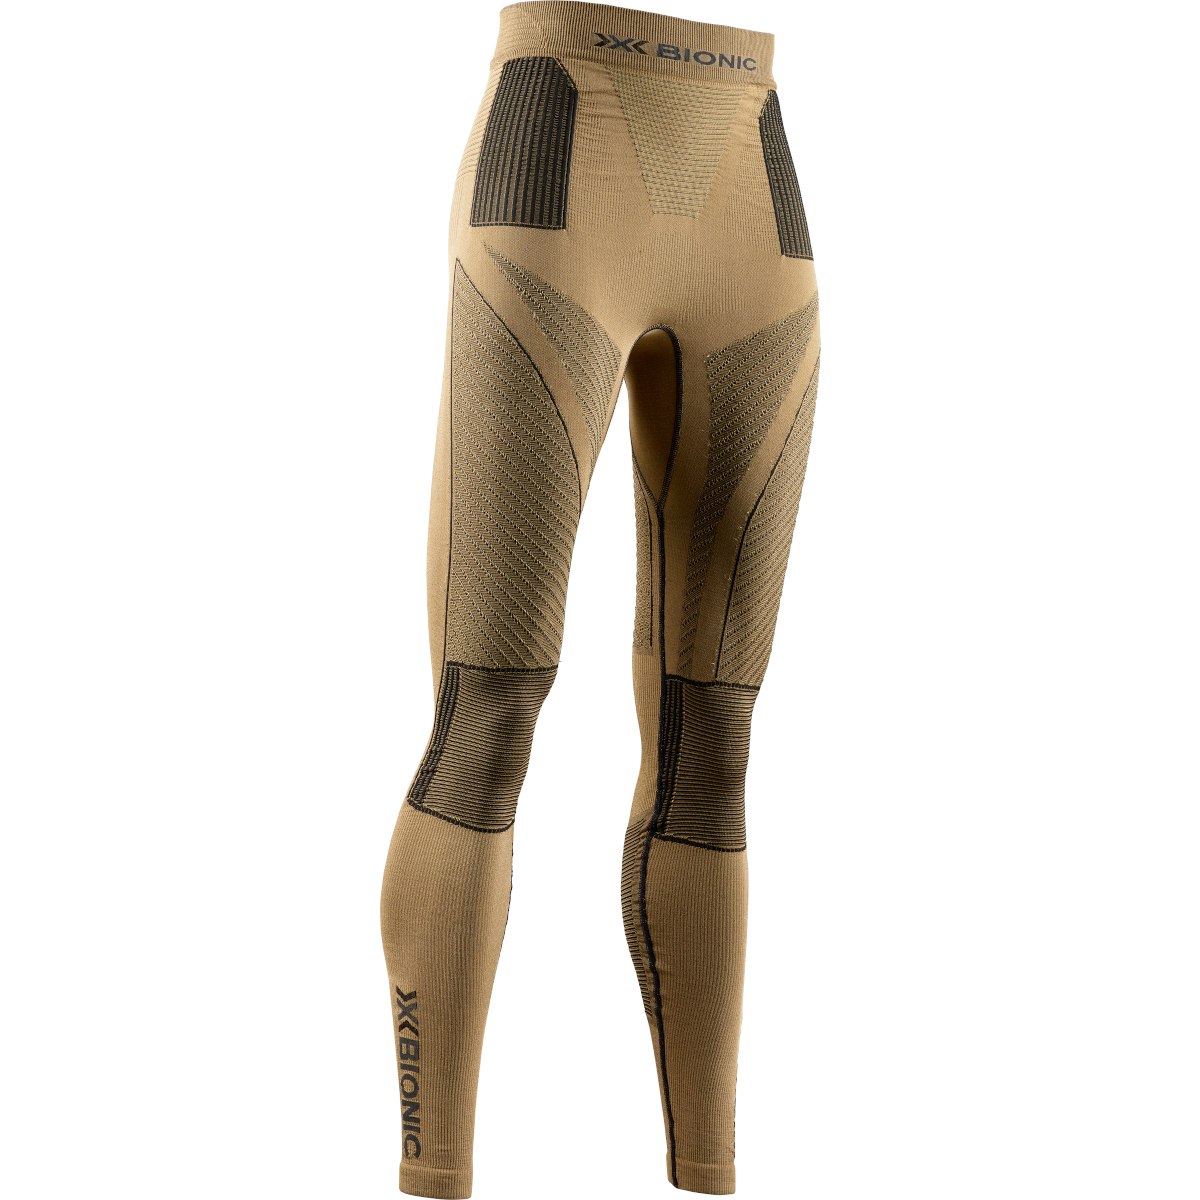 Produktbild von X-Bionic Radiactor 4.0 Unterhose lang Damen - gold/black